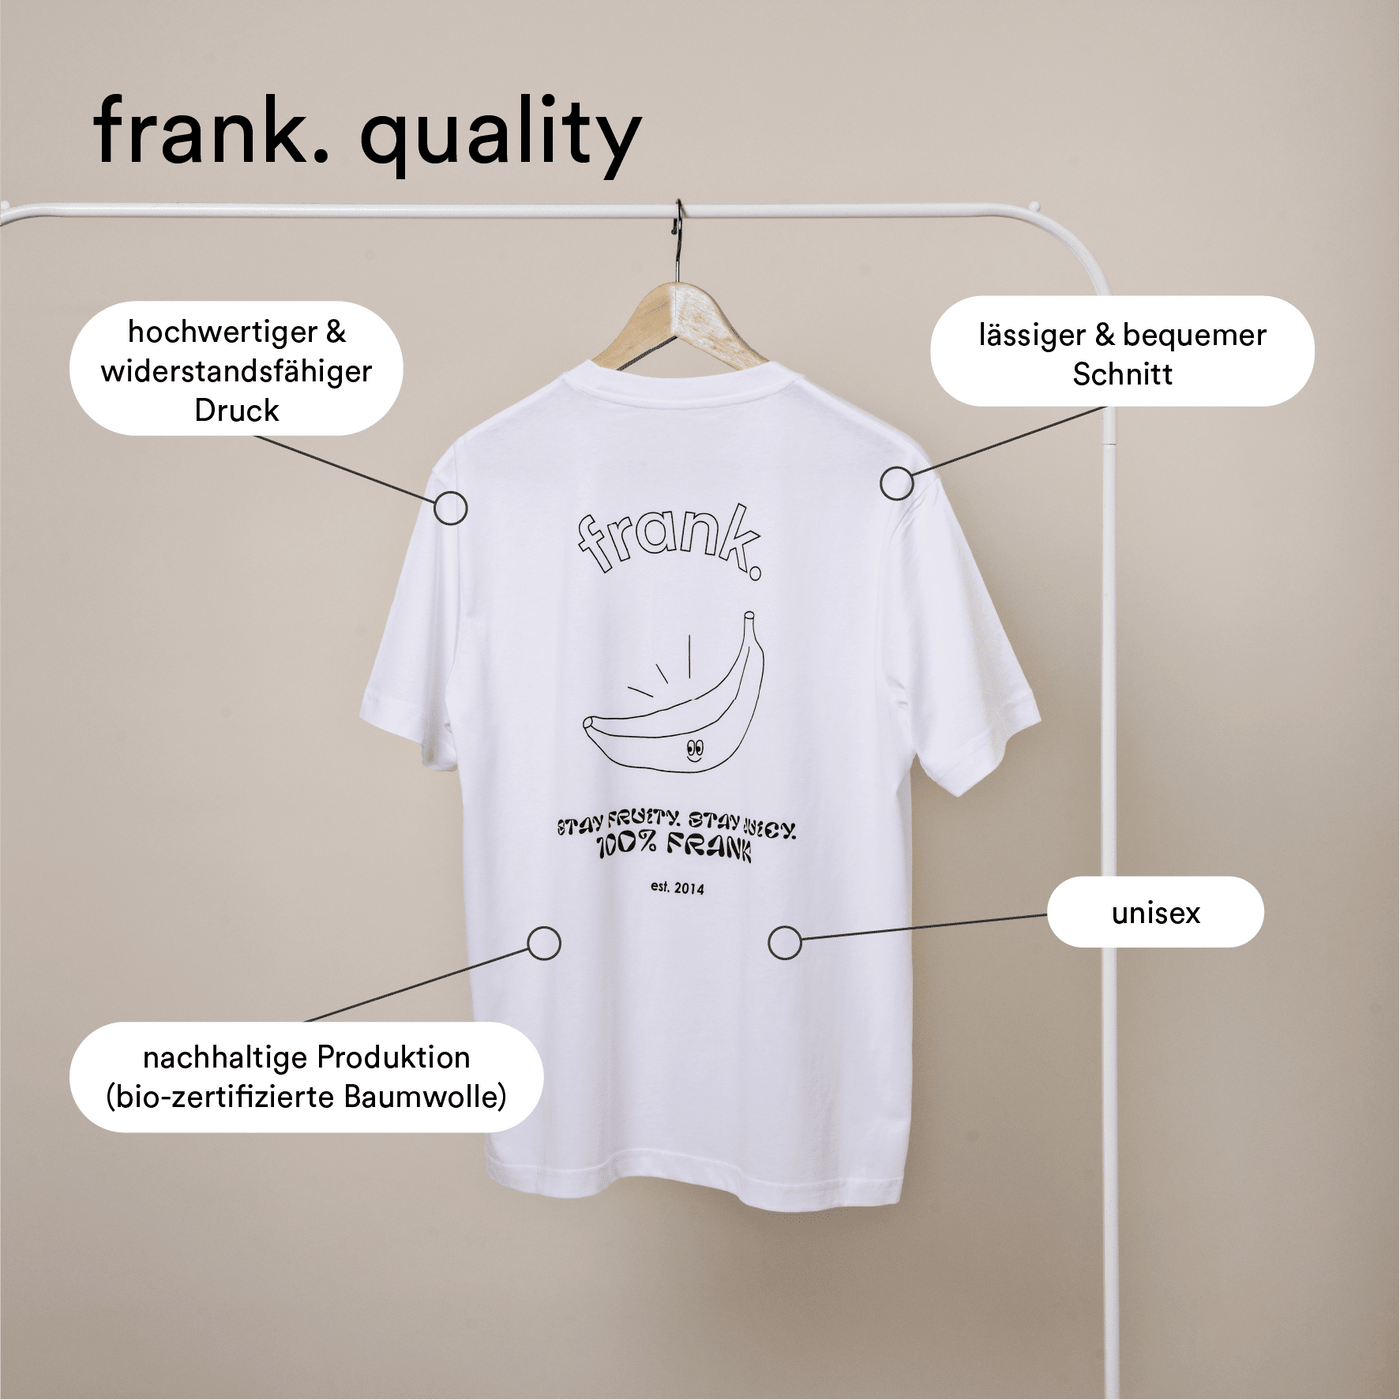 Darstellung der gebotenen Qualität des T-Shirts von frank.